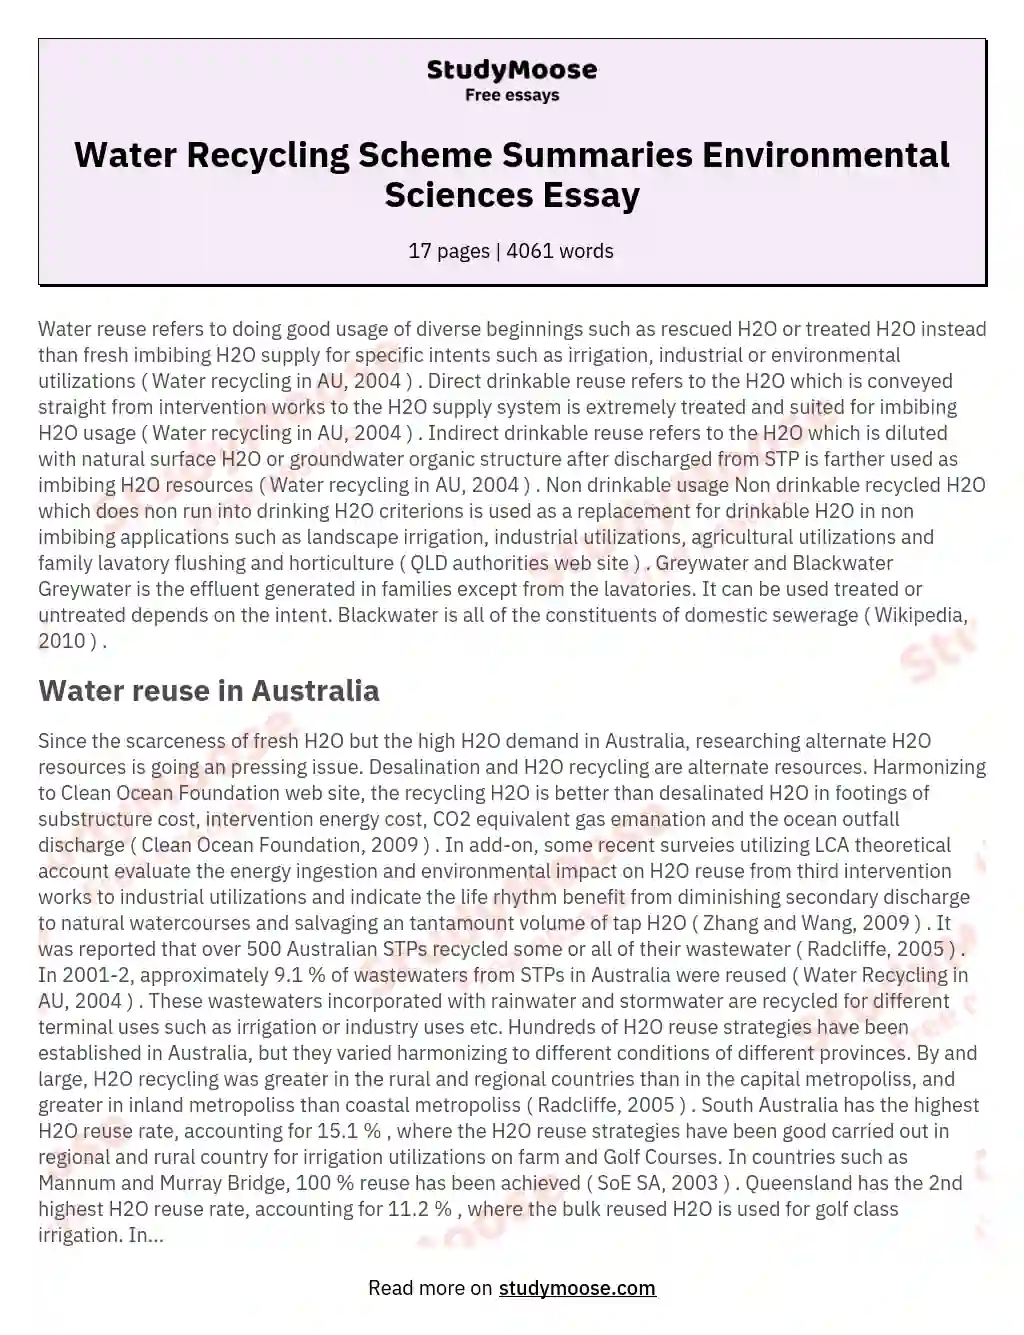 Water Recycling Scheme Summaries Environmental Sciences Essay essay